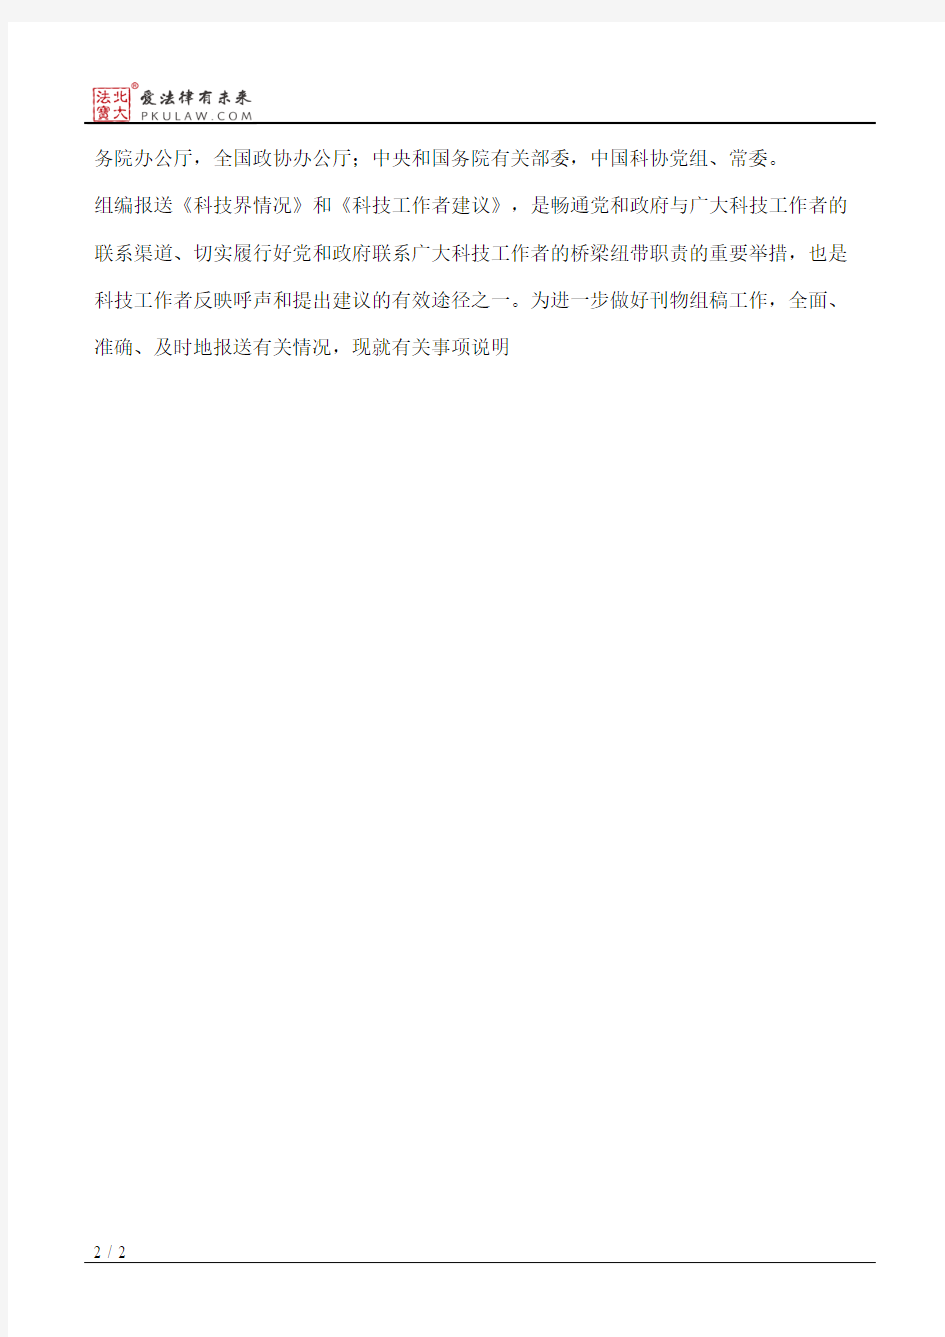 中国科学技术协会调研宣传部关于为《科技界情况》和《科技工作者